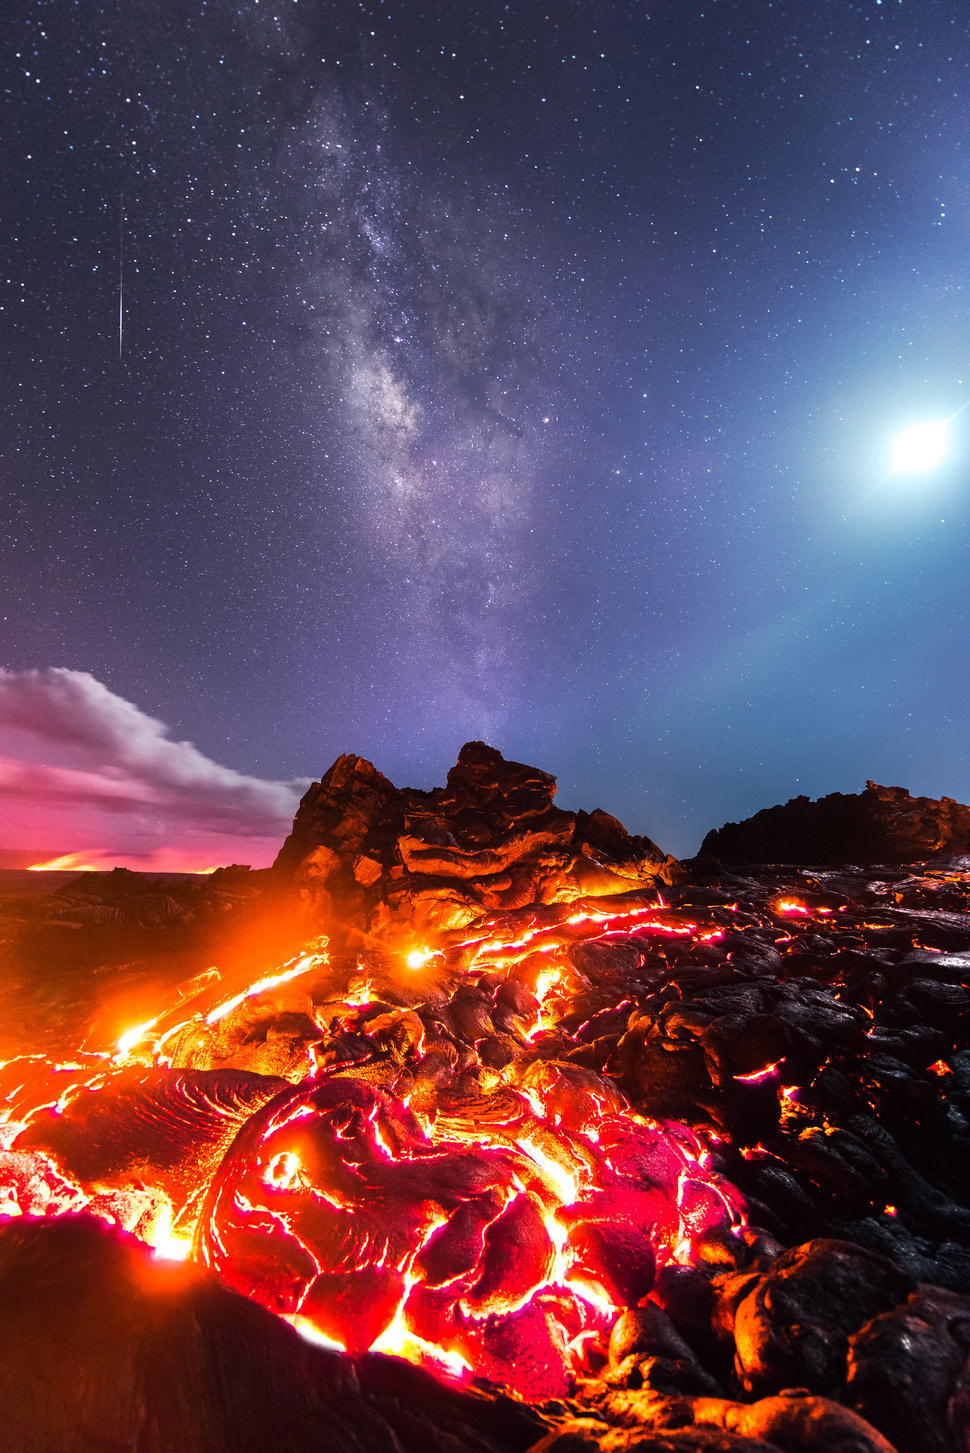 Fotógrafo capta lava, lua, meteoro e via láctea em um clique